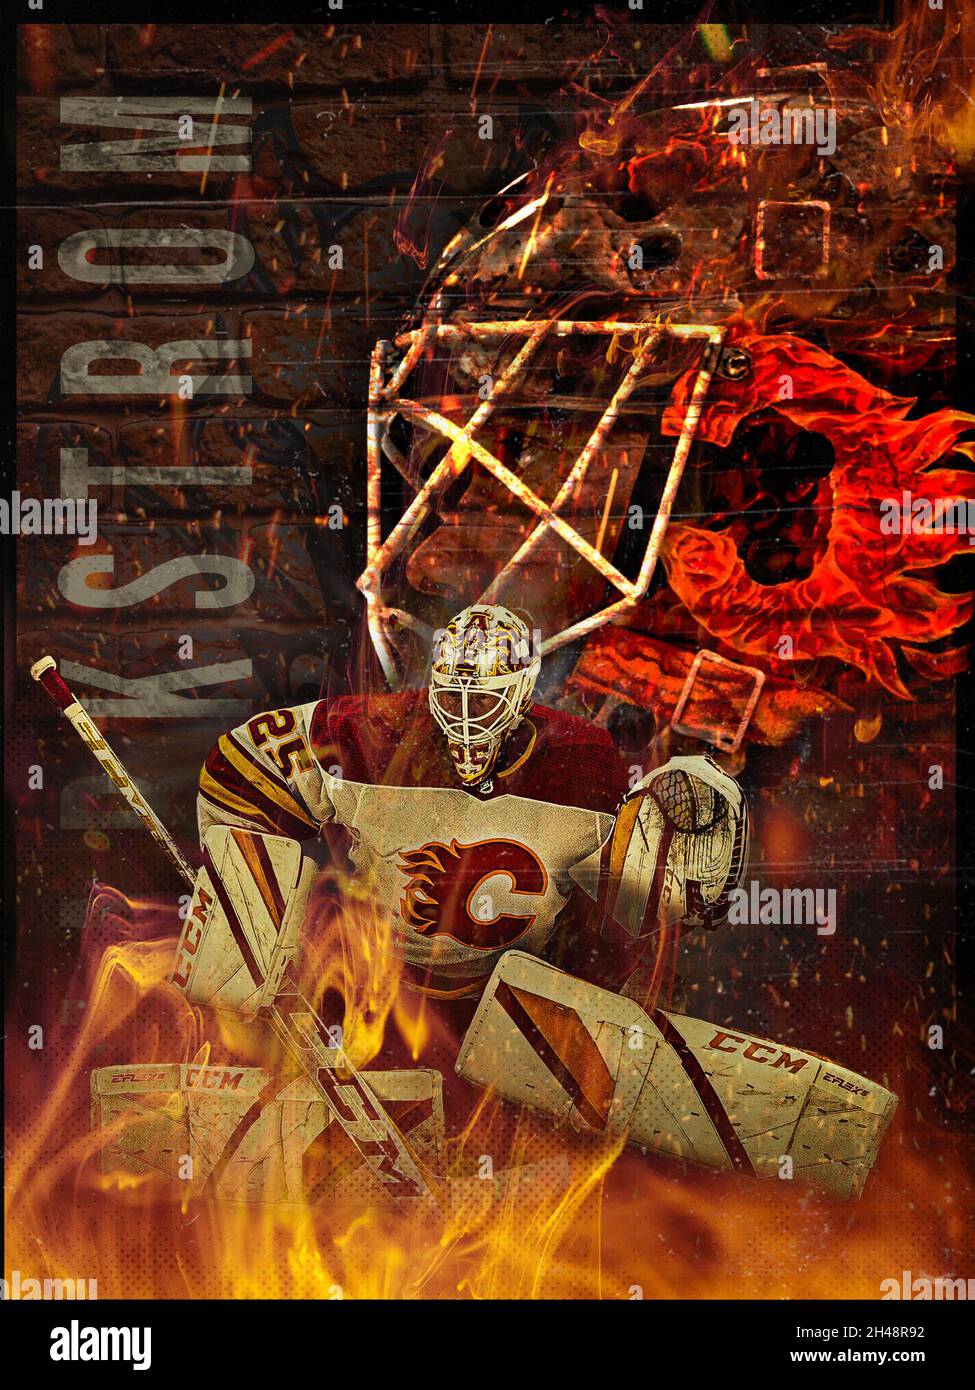 Jacob Markstrom, Calgary Flames Stock Photo